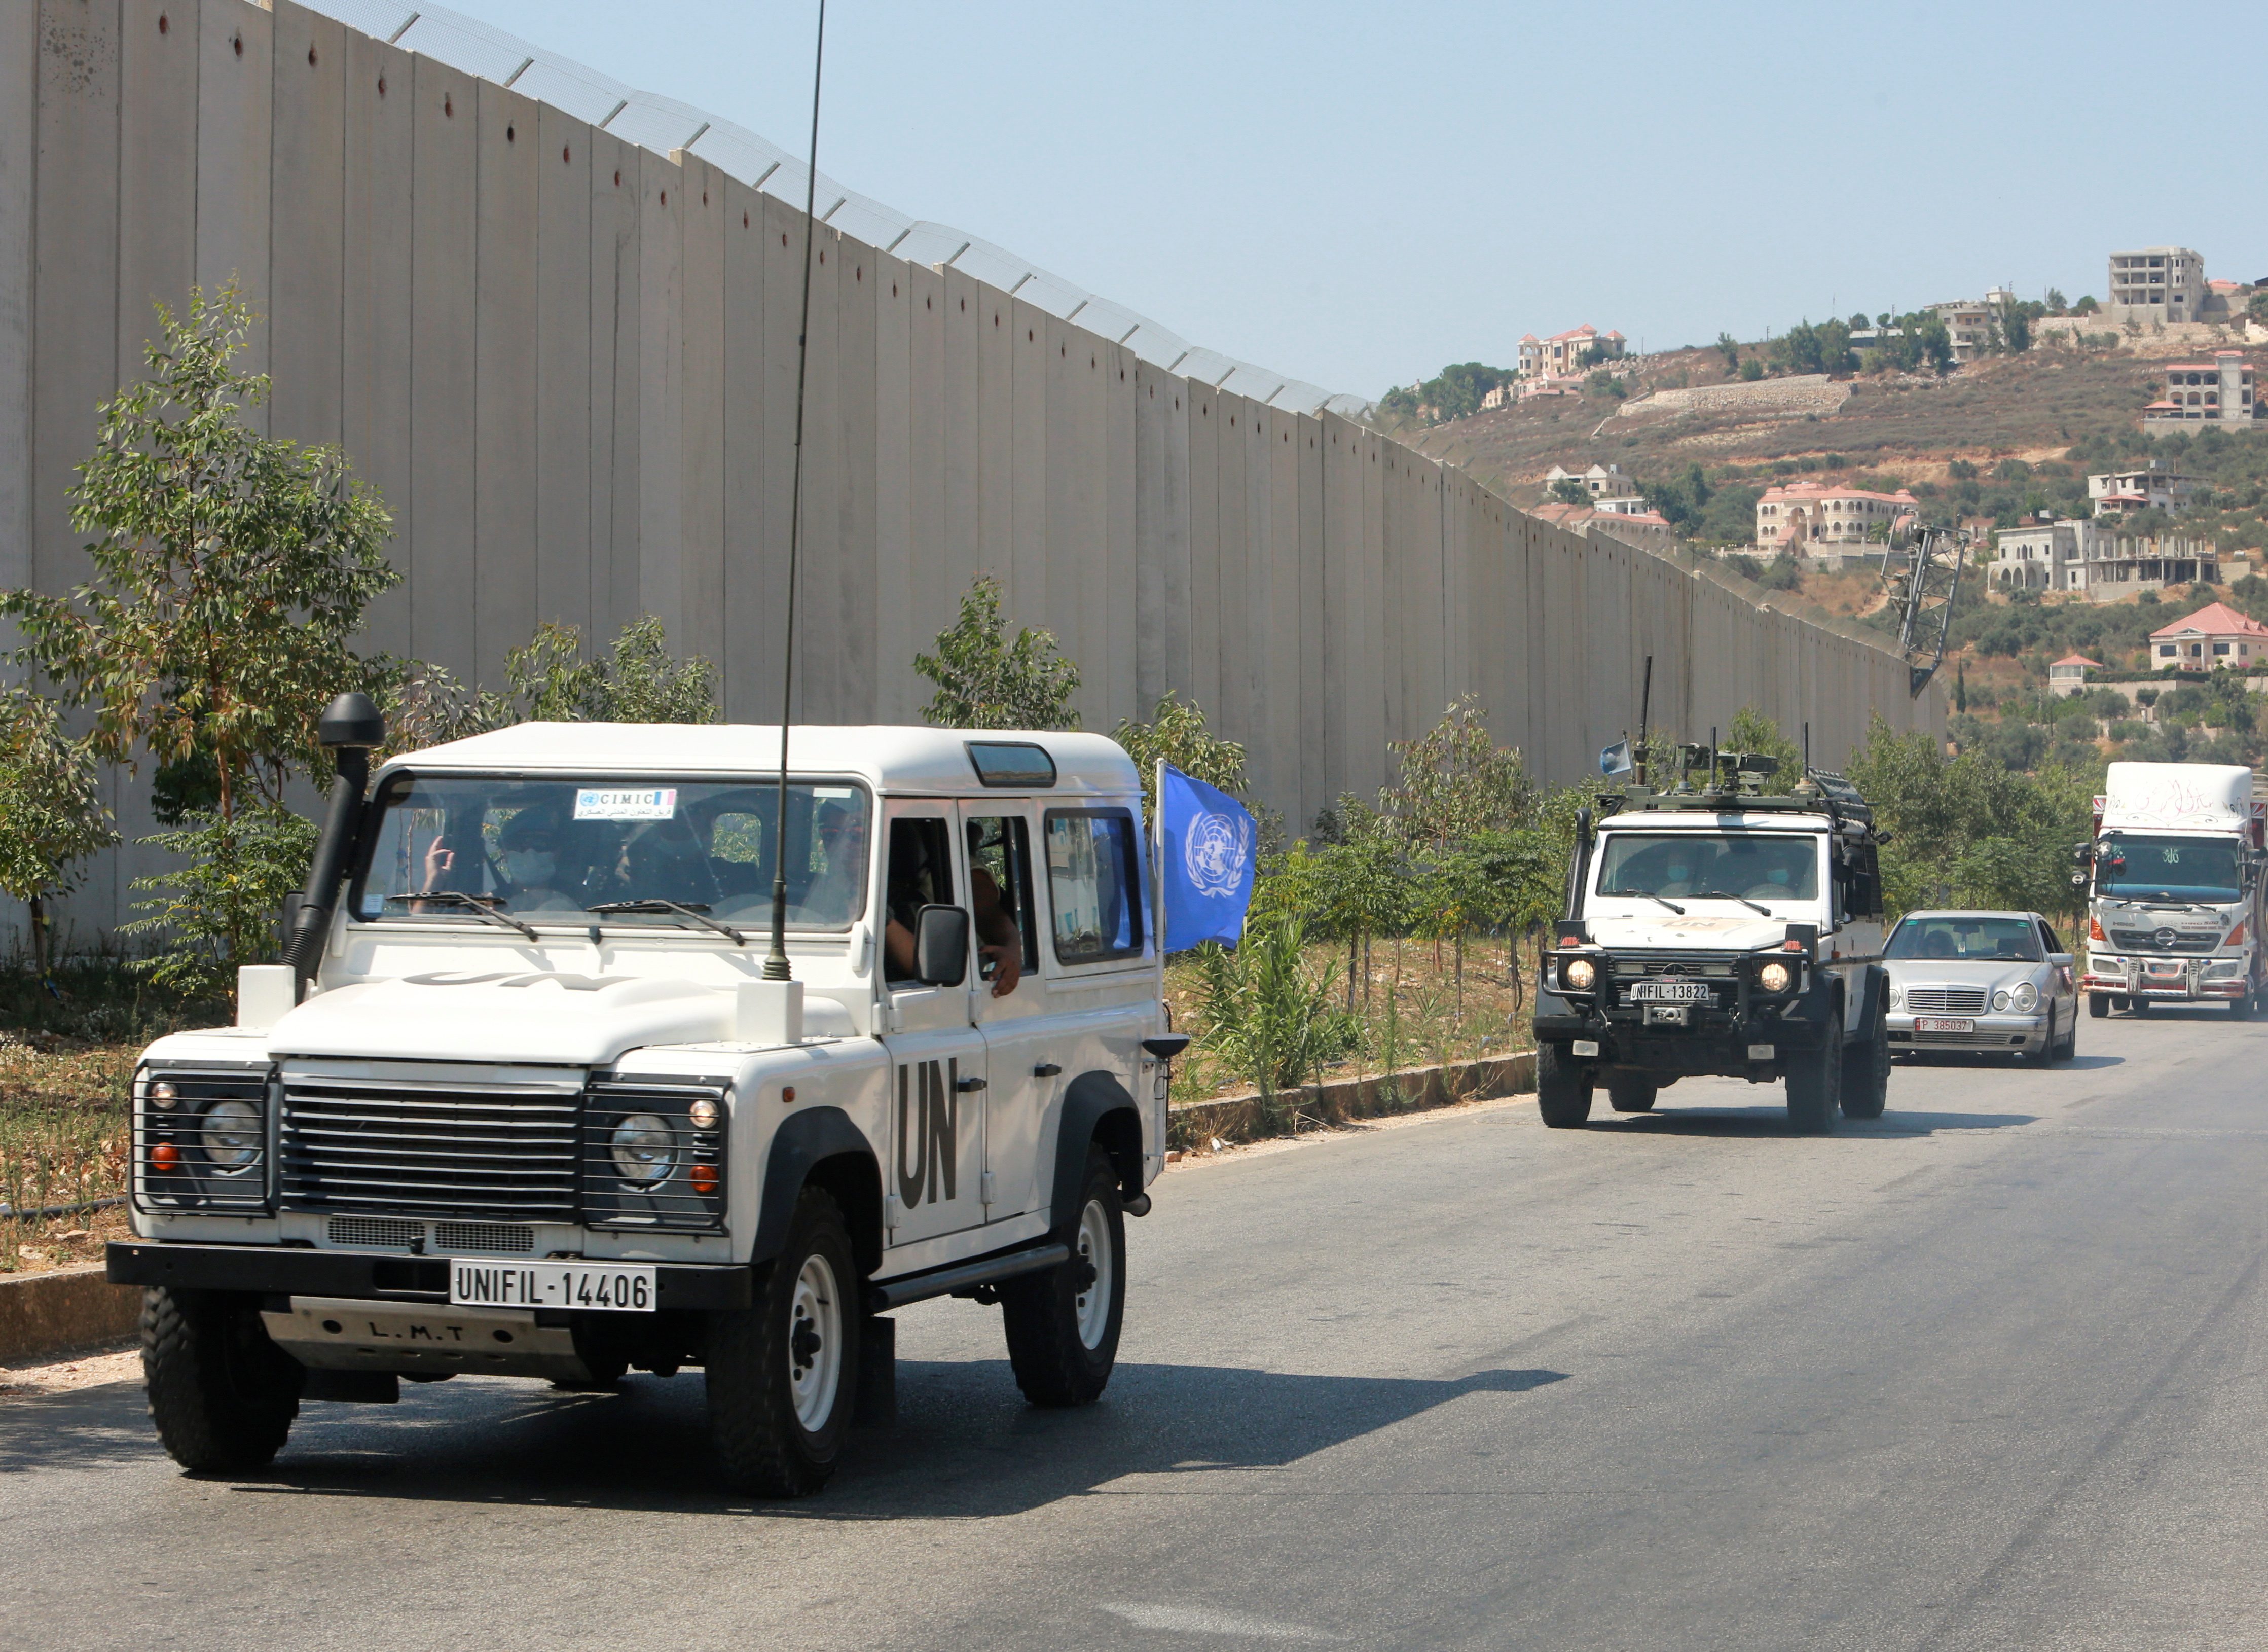 Vehículos de la FINUL, la Fuerza Interina de Naciones Unidas en Líbano, desplegada en el sur del país en la frontera con Israel. (REUTERS/Aziz Taher)